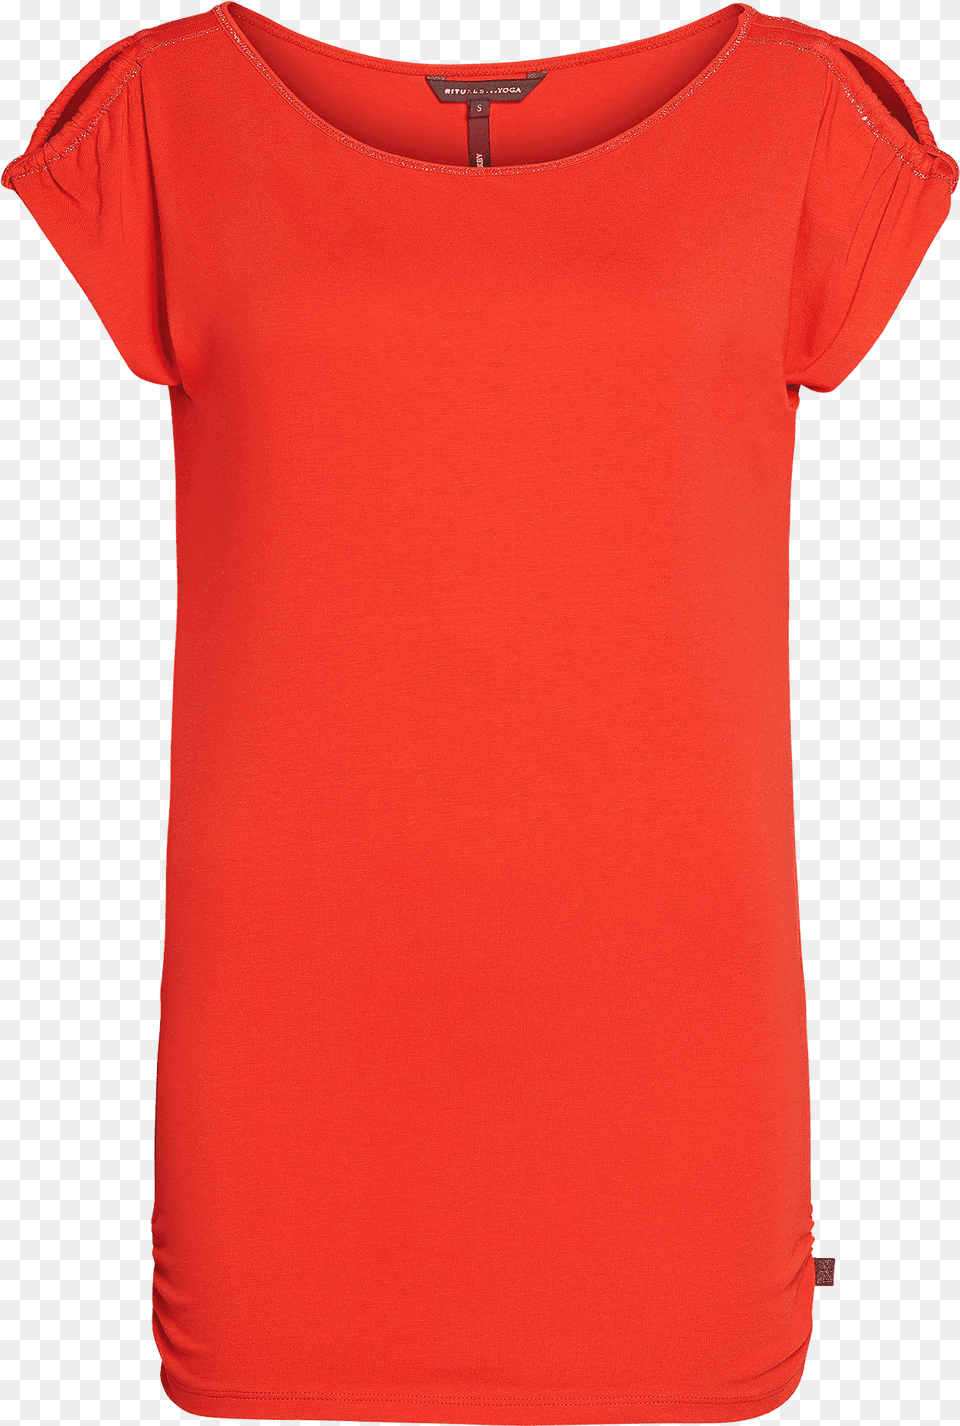 T Active Shirt, Clothing, T-shirt Png Image